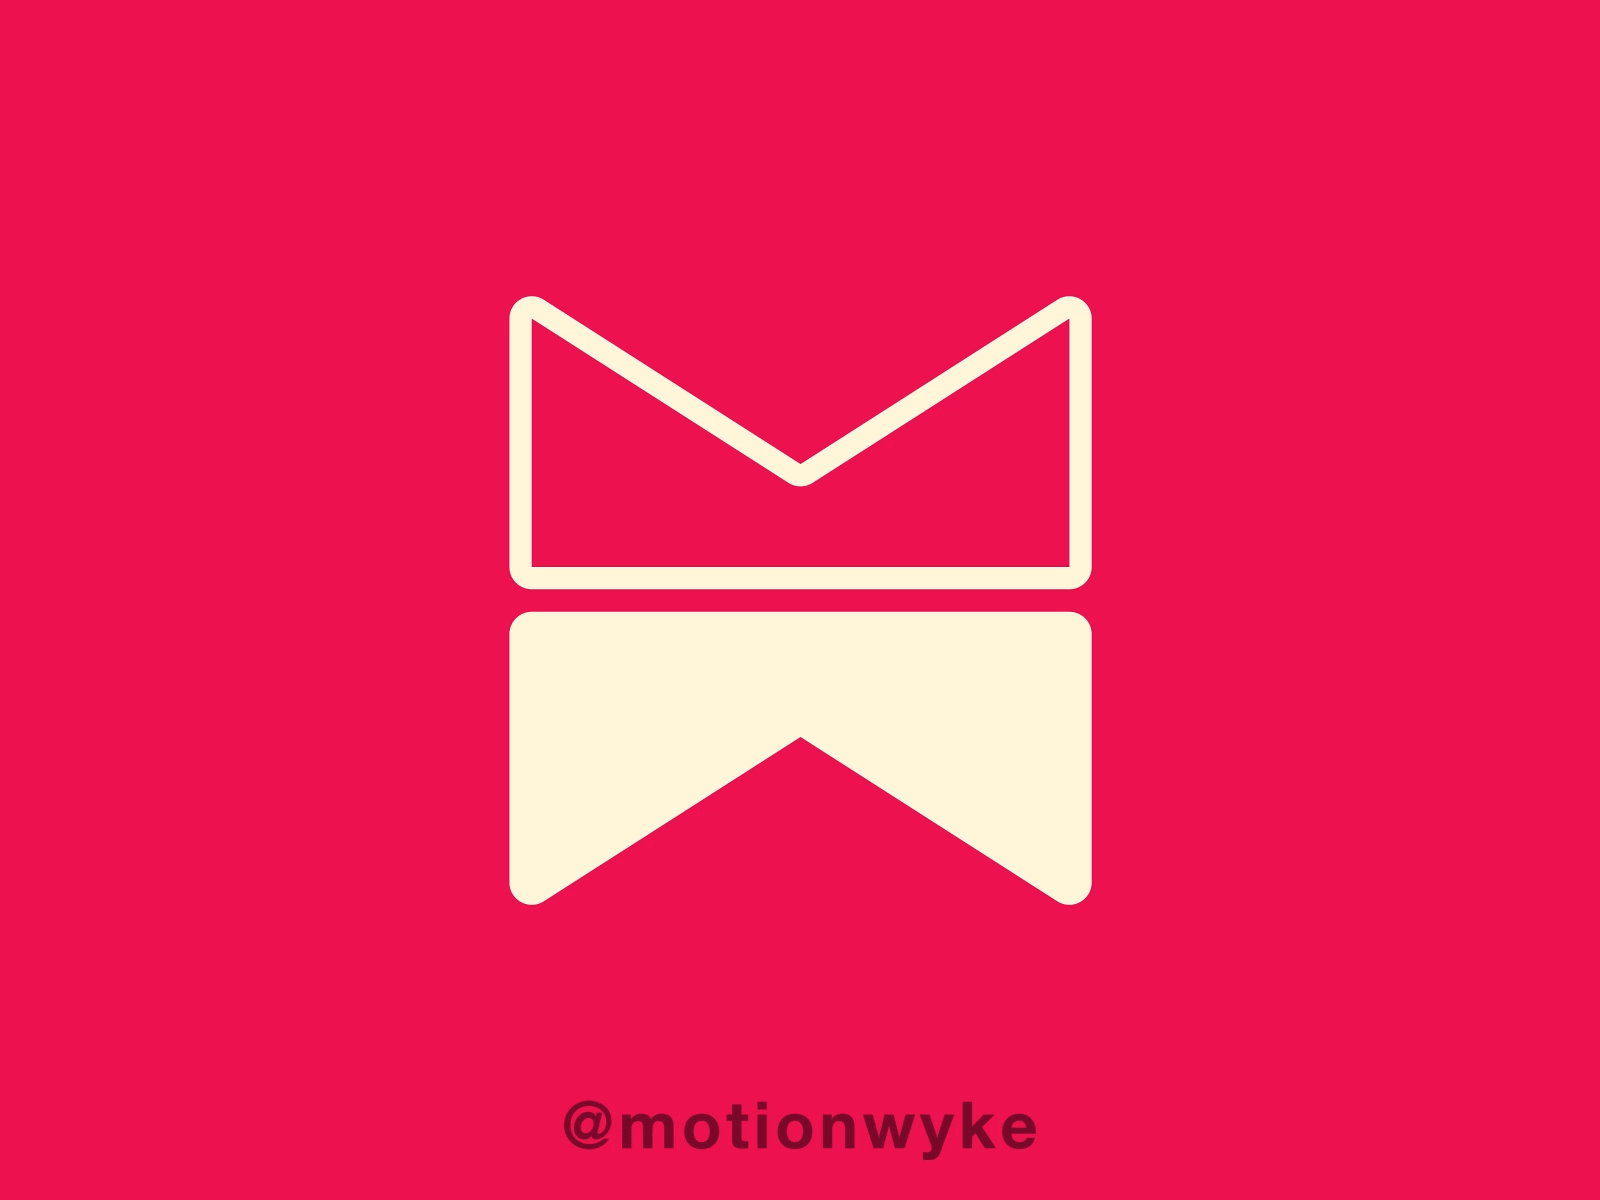 Motionwyke Logo Animation #2